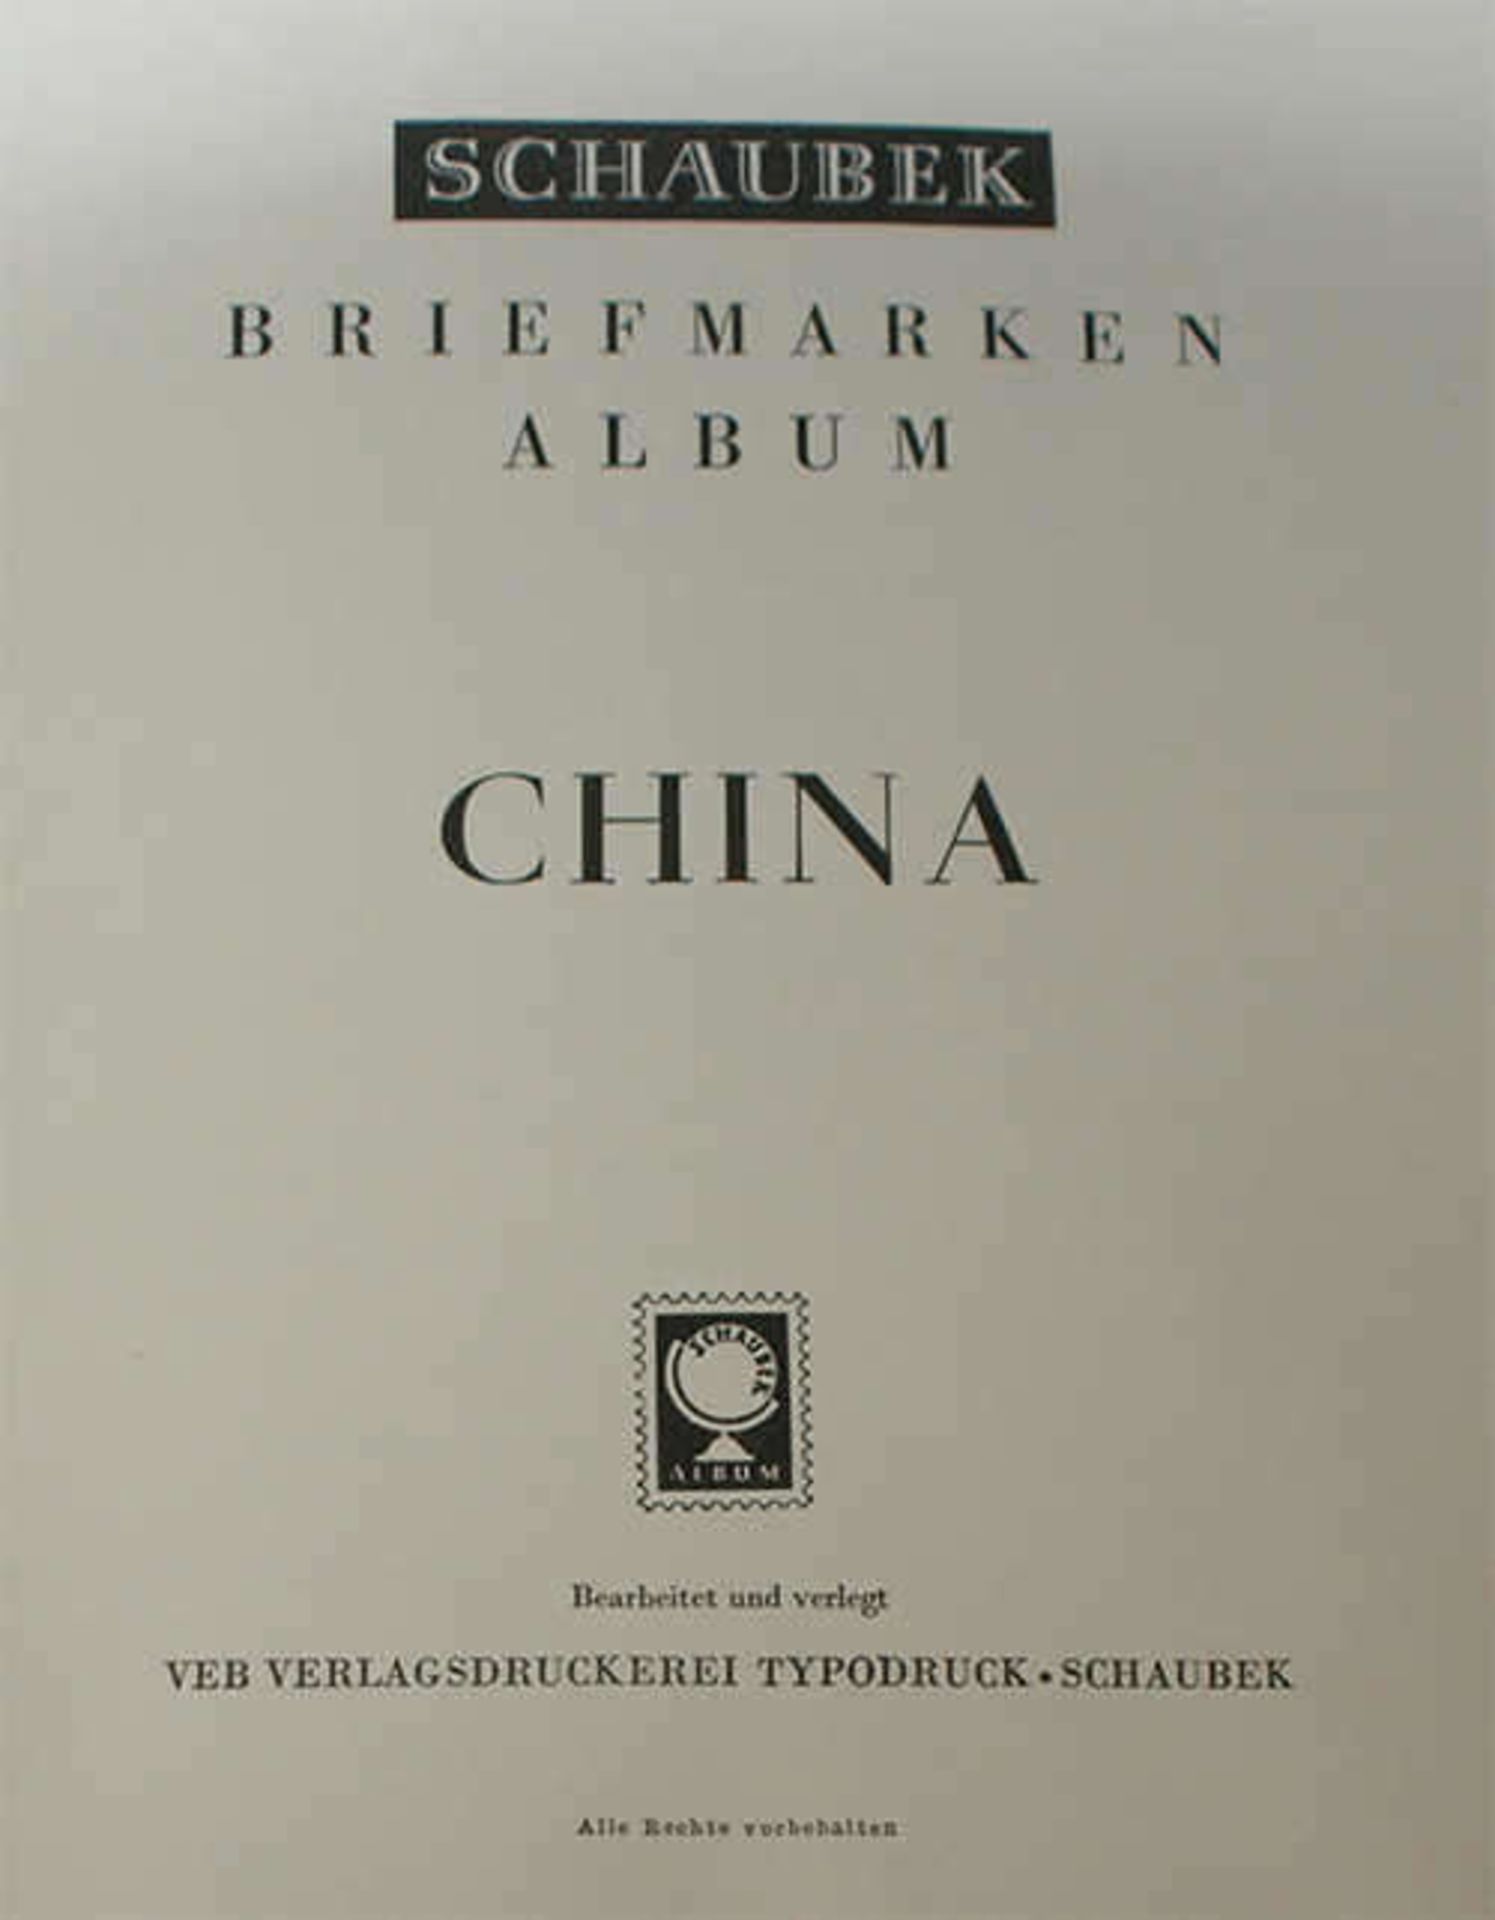 1 Schaubek Vordruck Album China von 1970 - 1984 ohne Marken, guter Zustand - Bild 2 aus 2